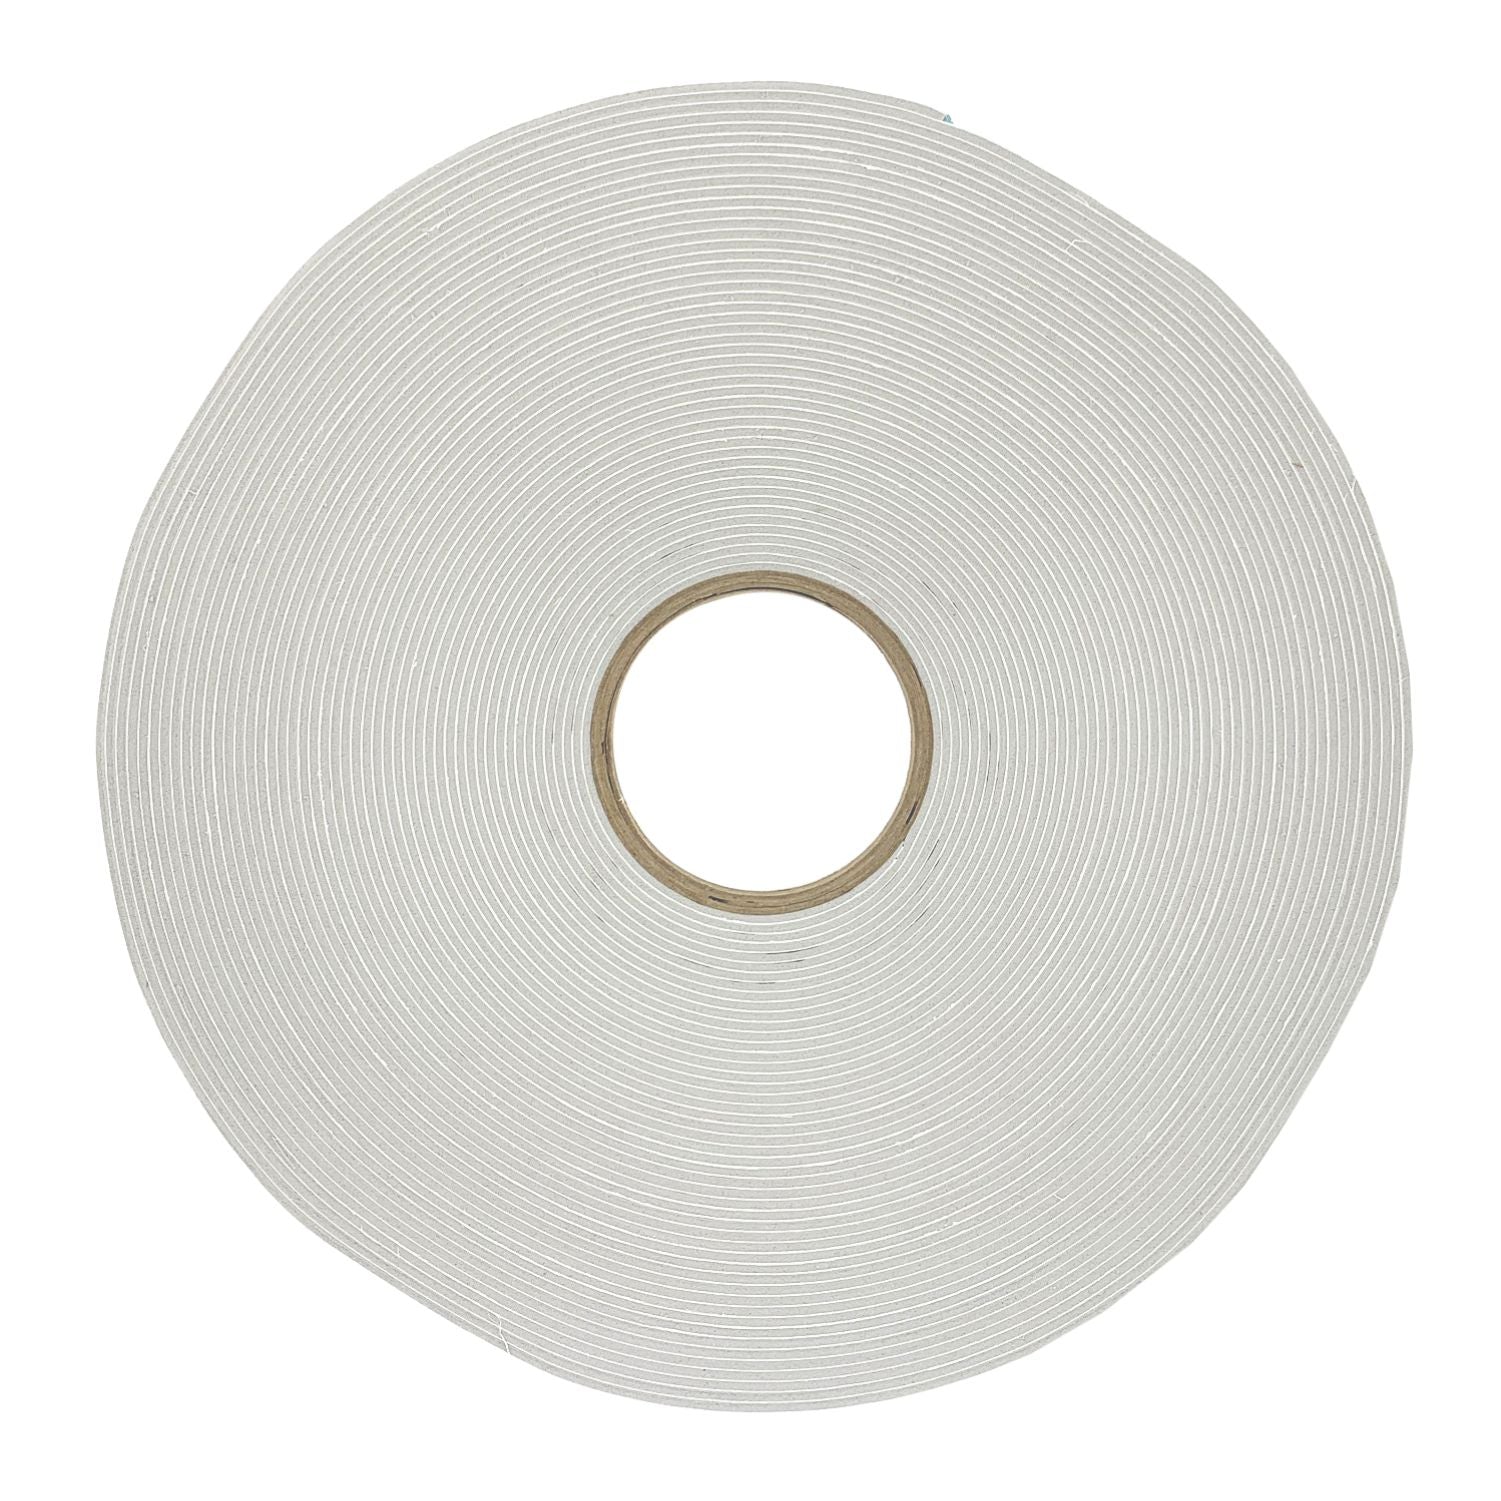 Foam Tape Strip - Rubber Stamp Materials